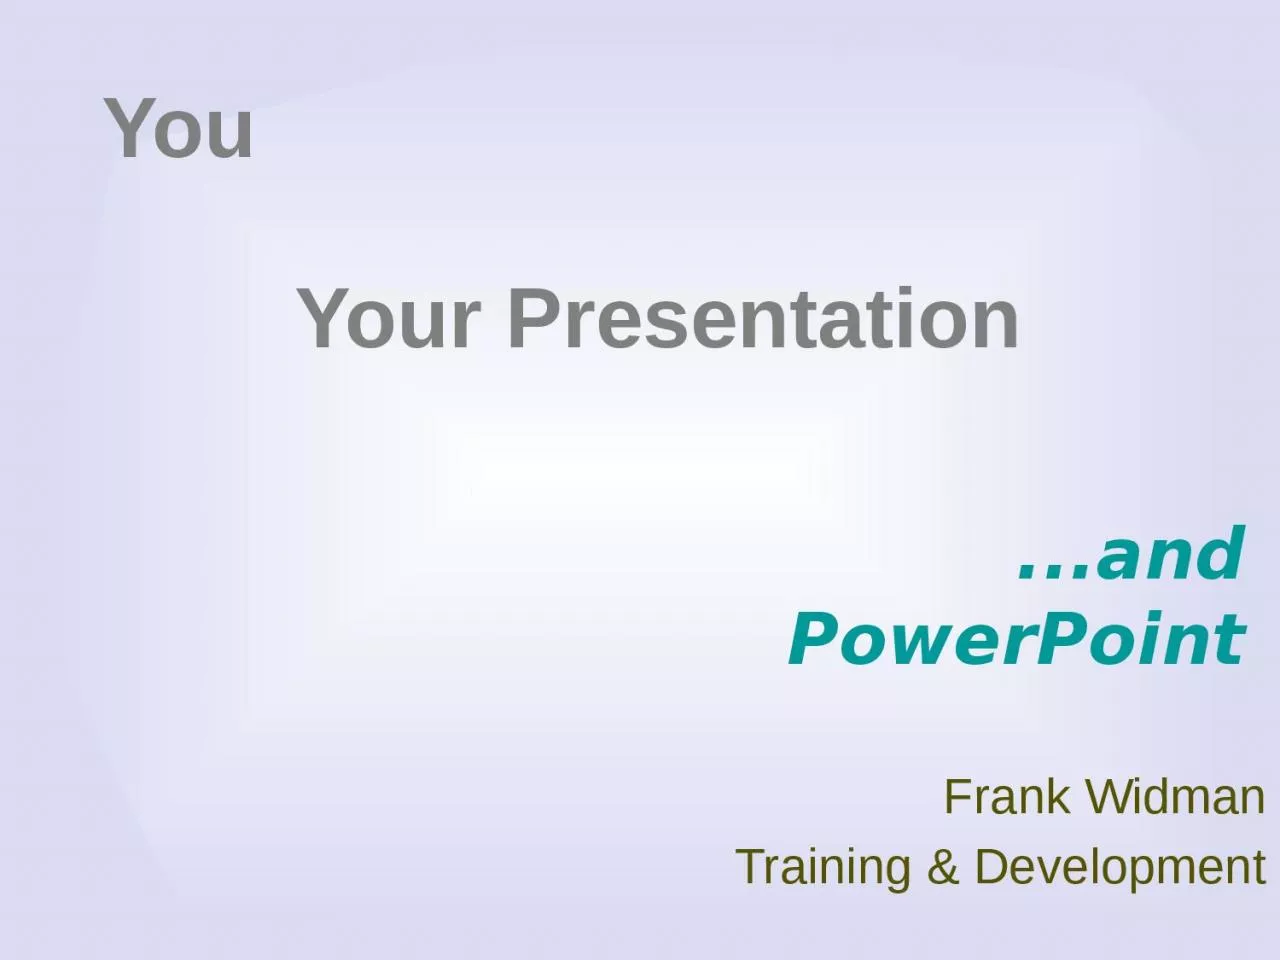 Frank Widman Training & Development